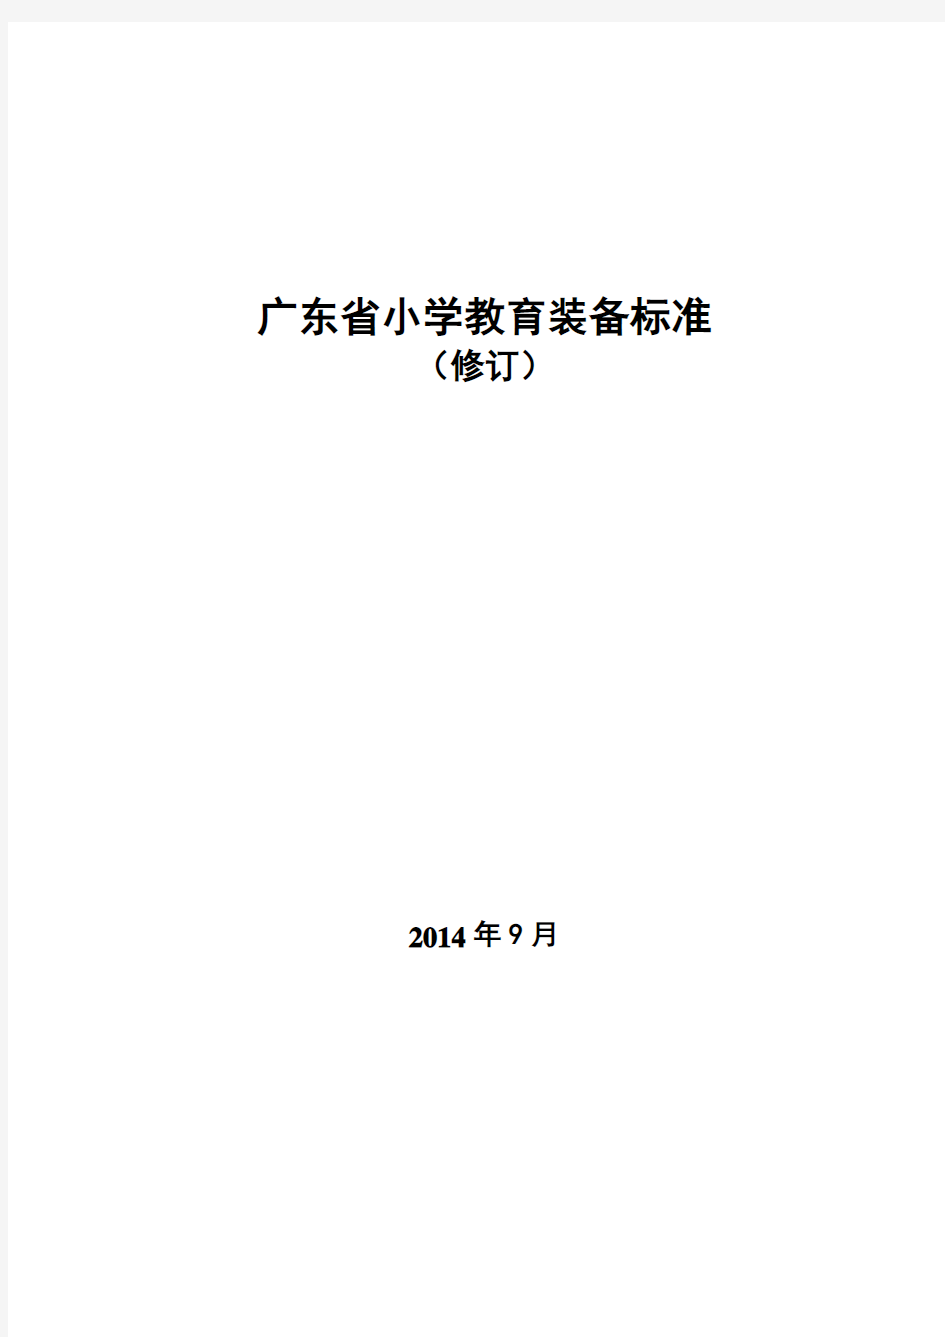 《广东省小学教育装备标准(修订)》